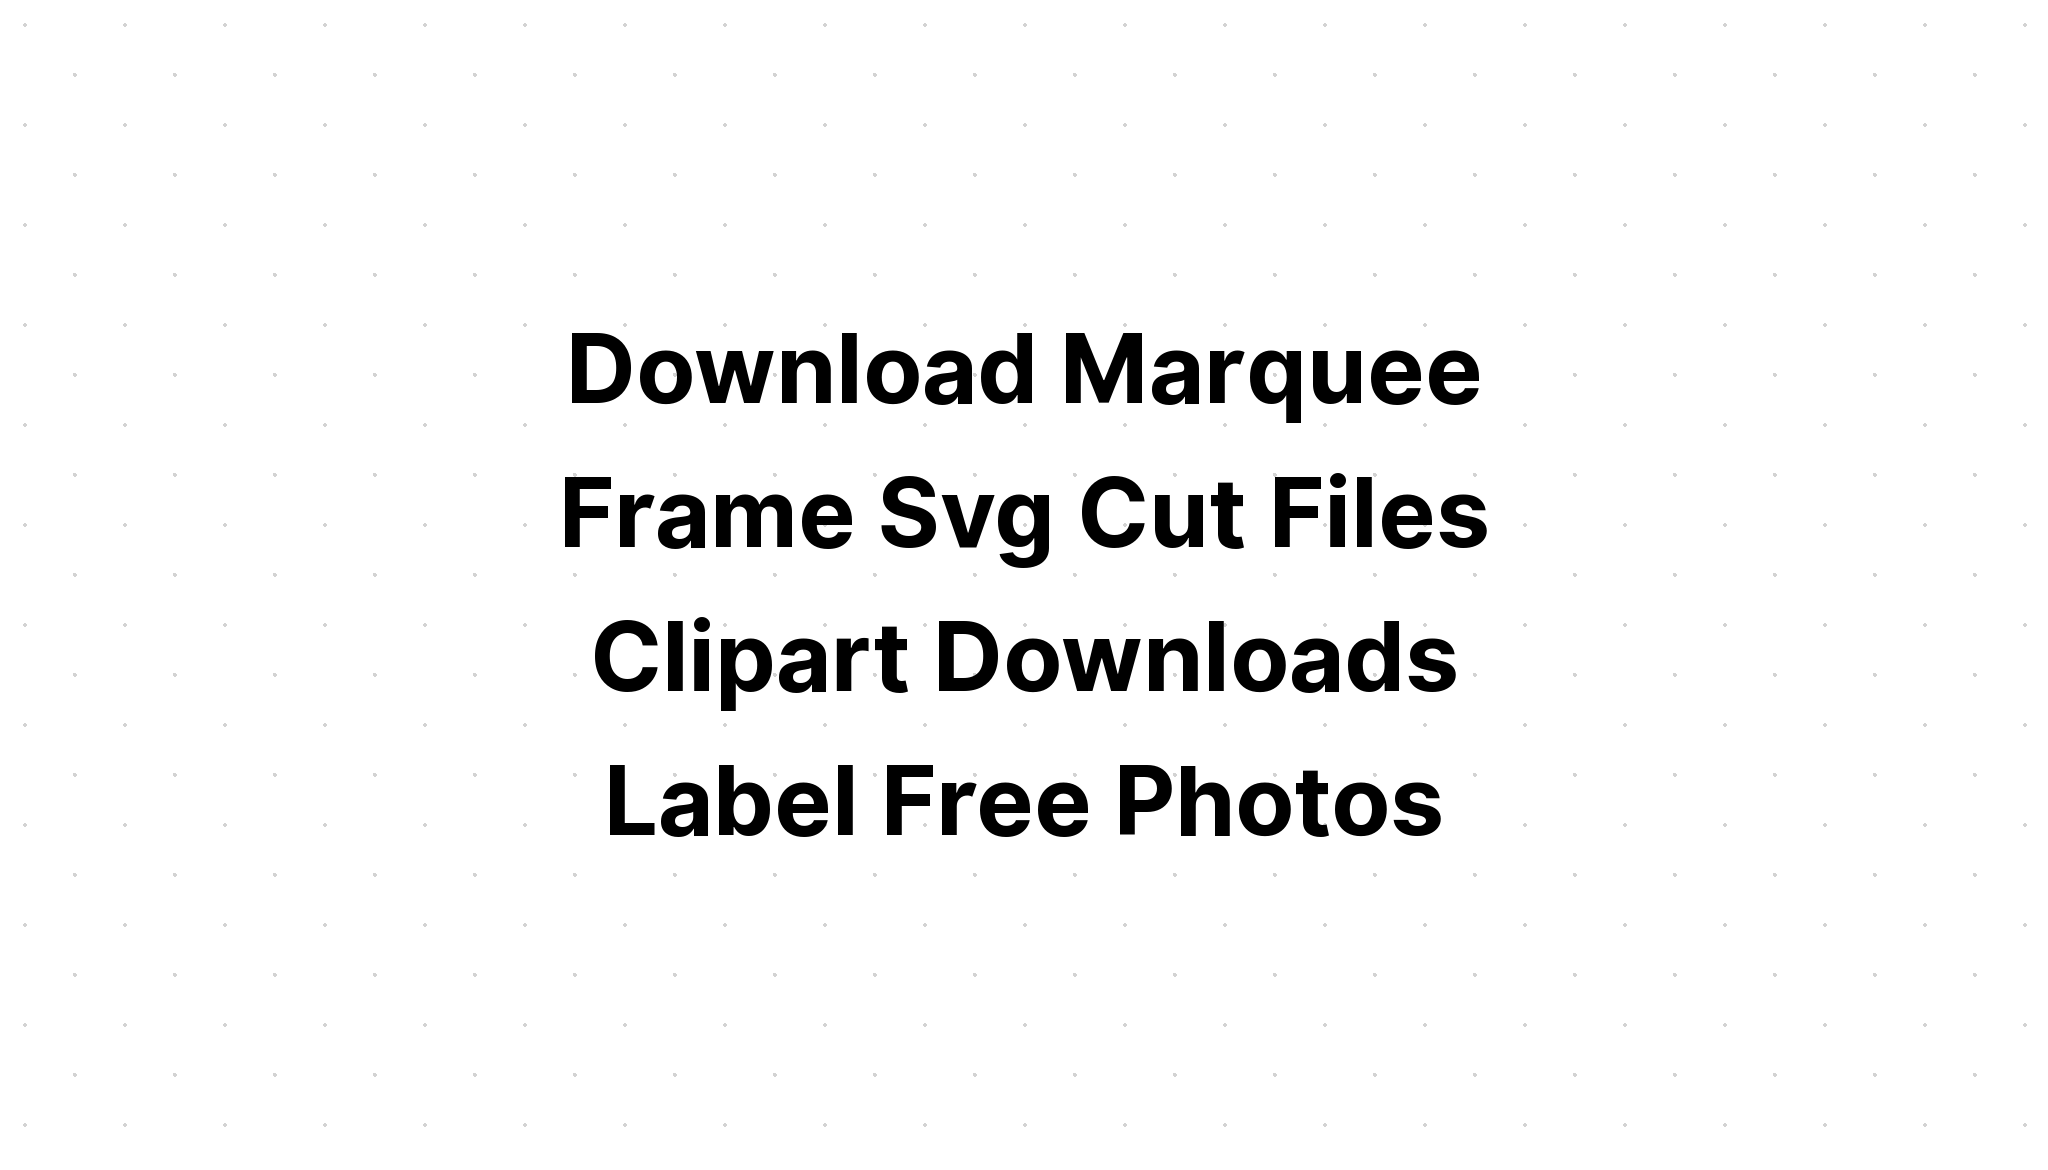 Download Shield Frame Rope Frame SVG File